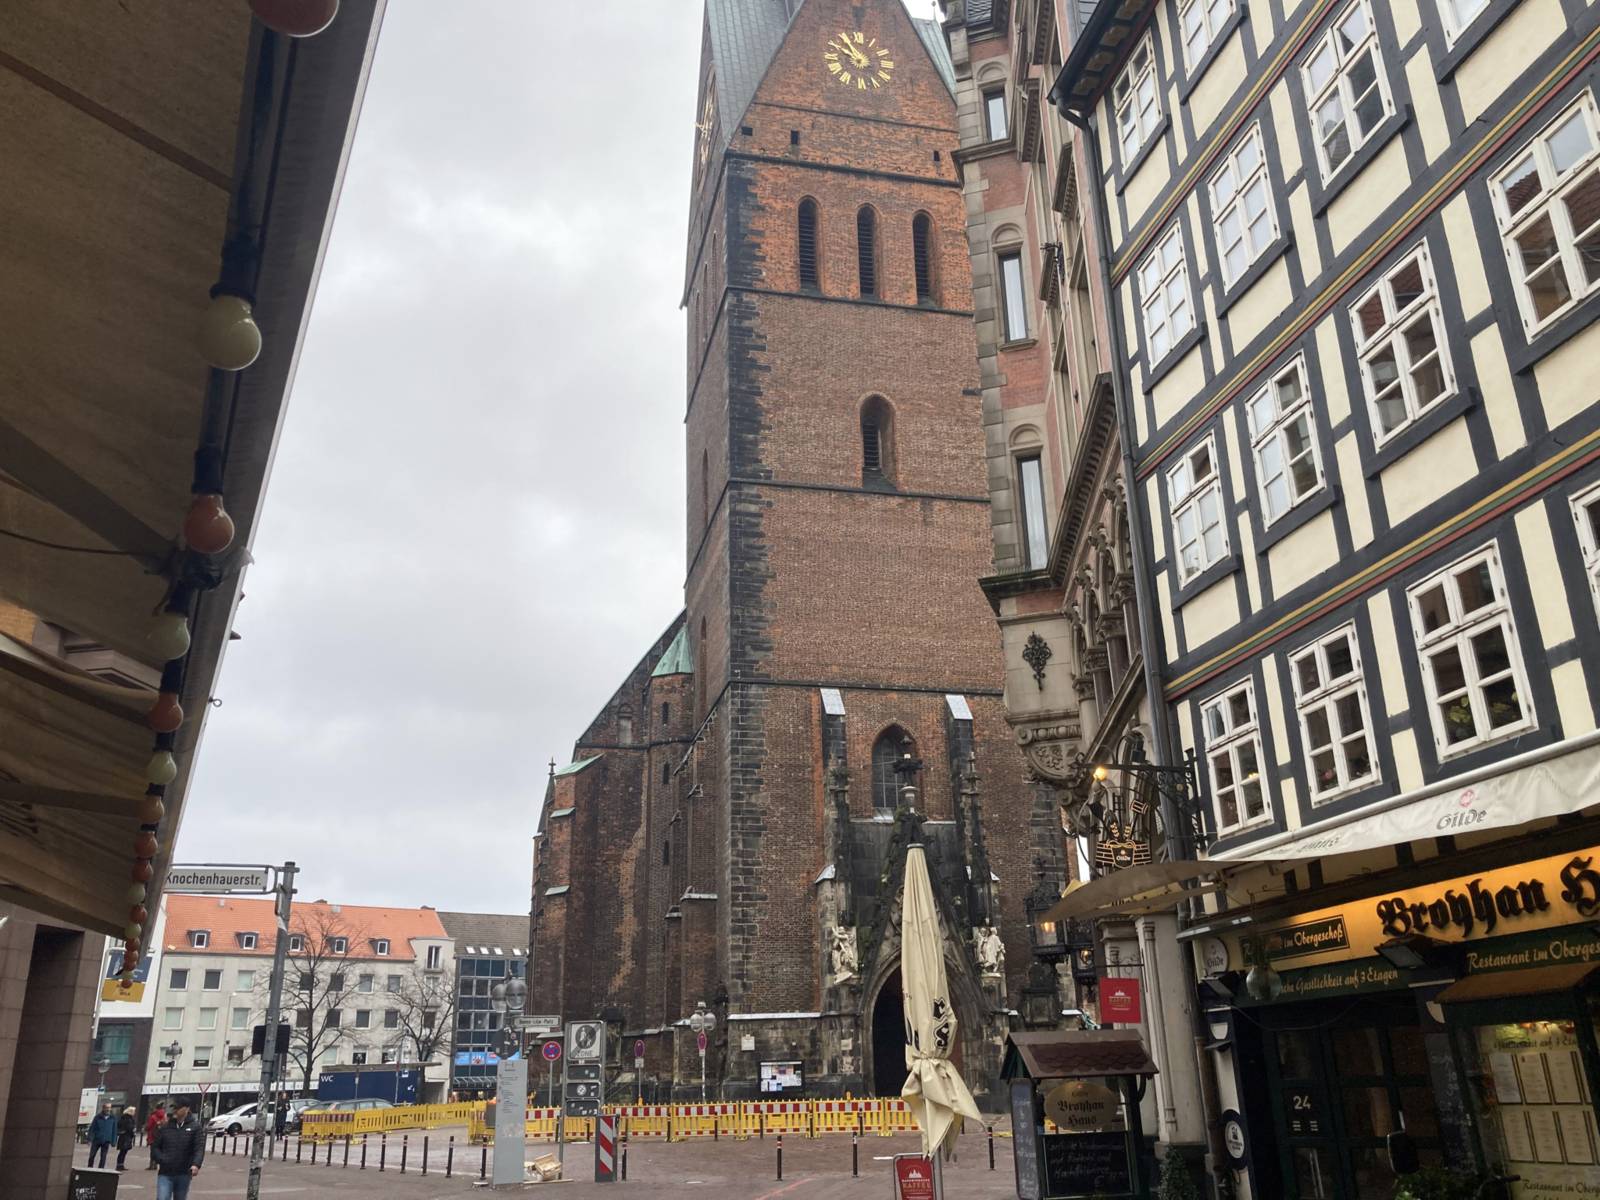 Blick auf die Marktkirche Hannover